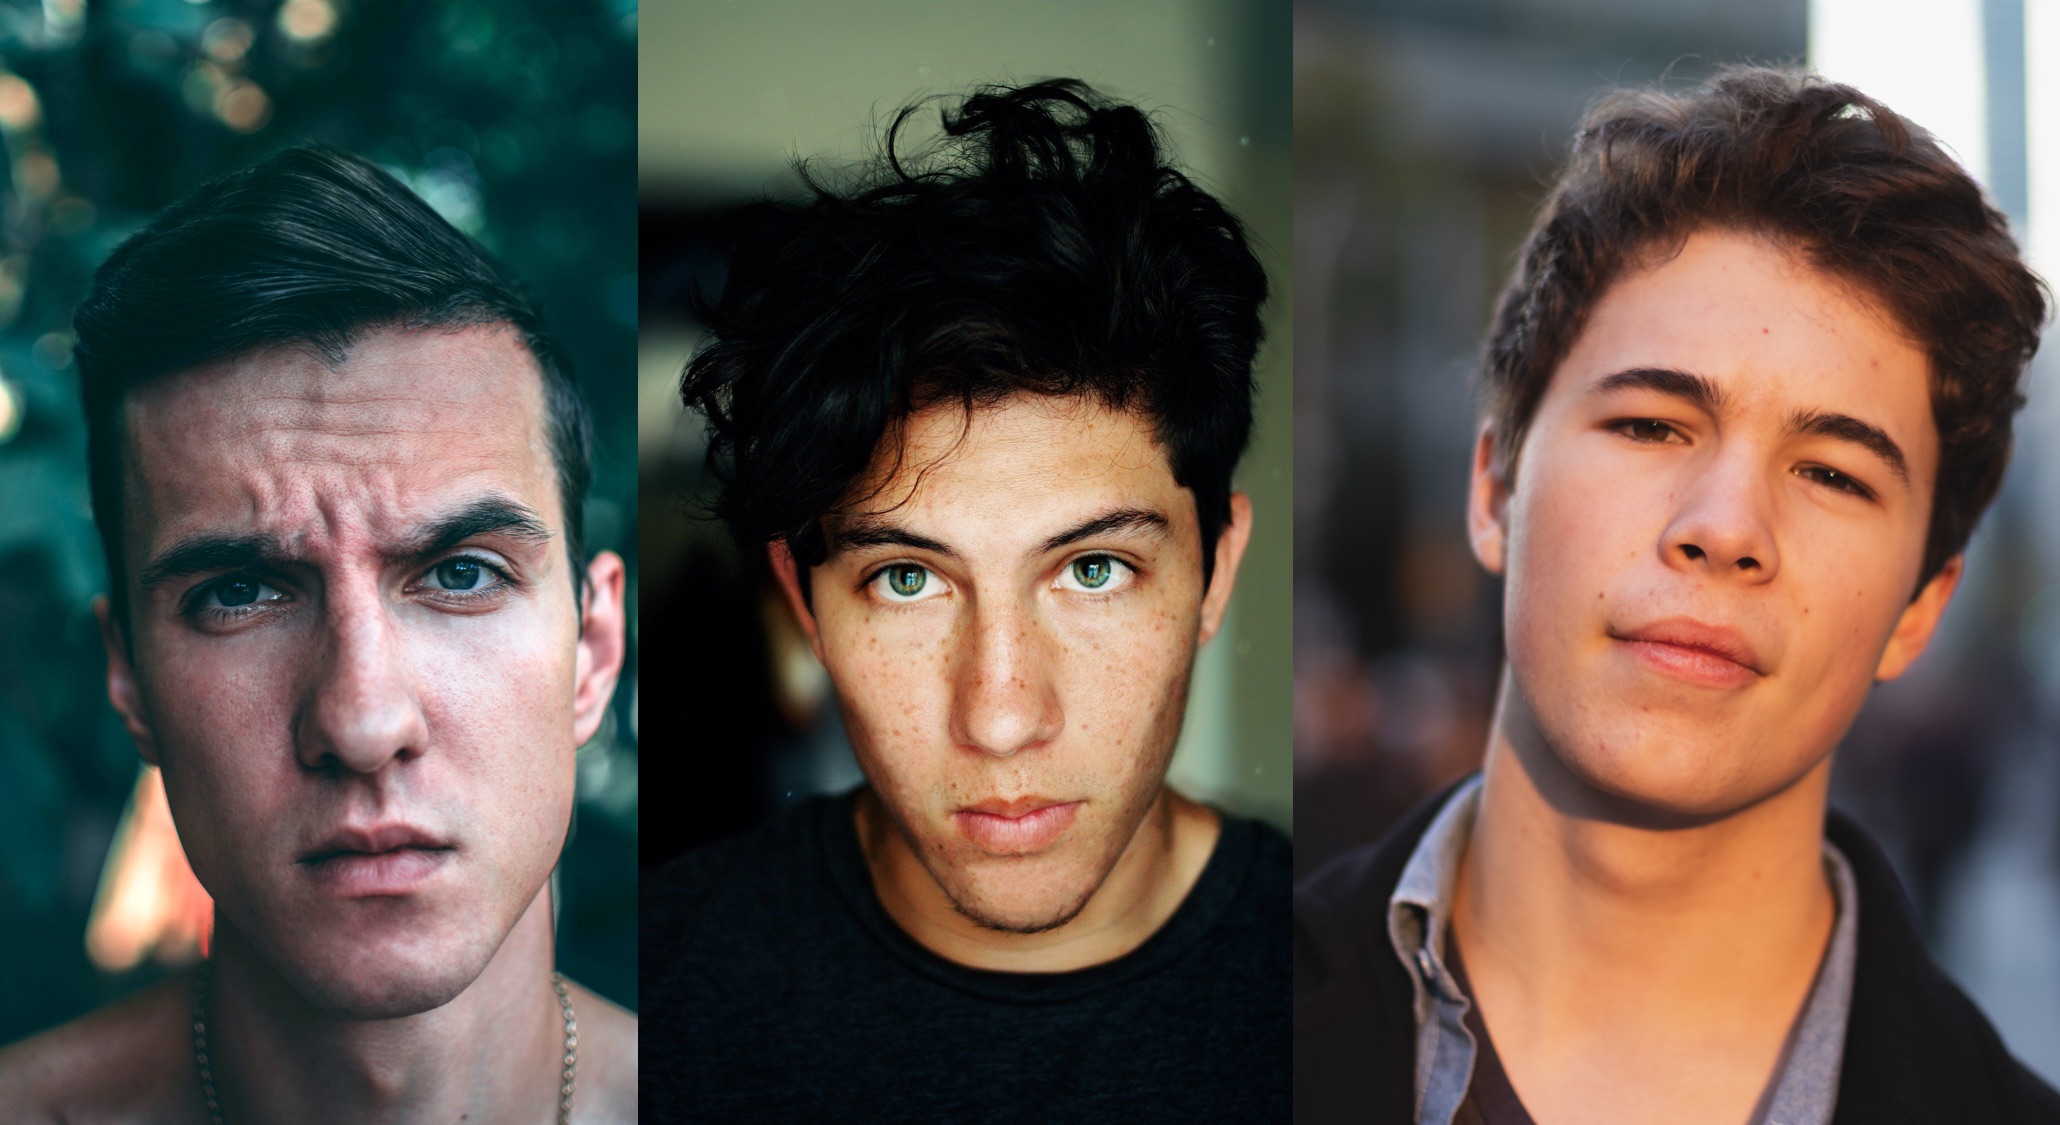 Gesichtsanalyse: Drei Junge Männer mit unterschiedlicher Gesichtsform